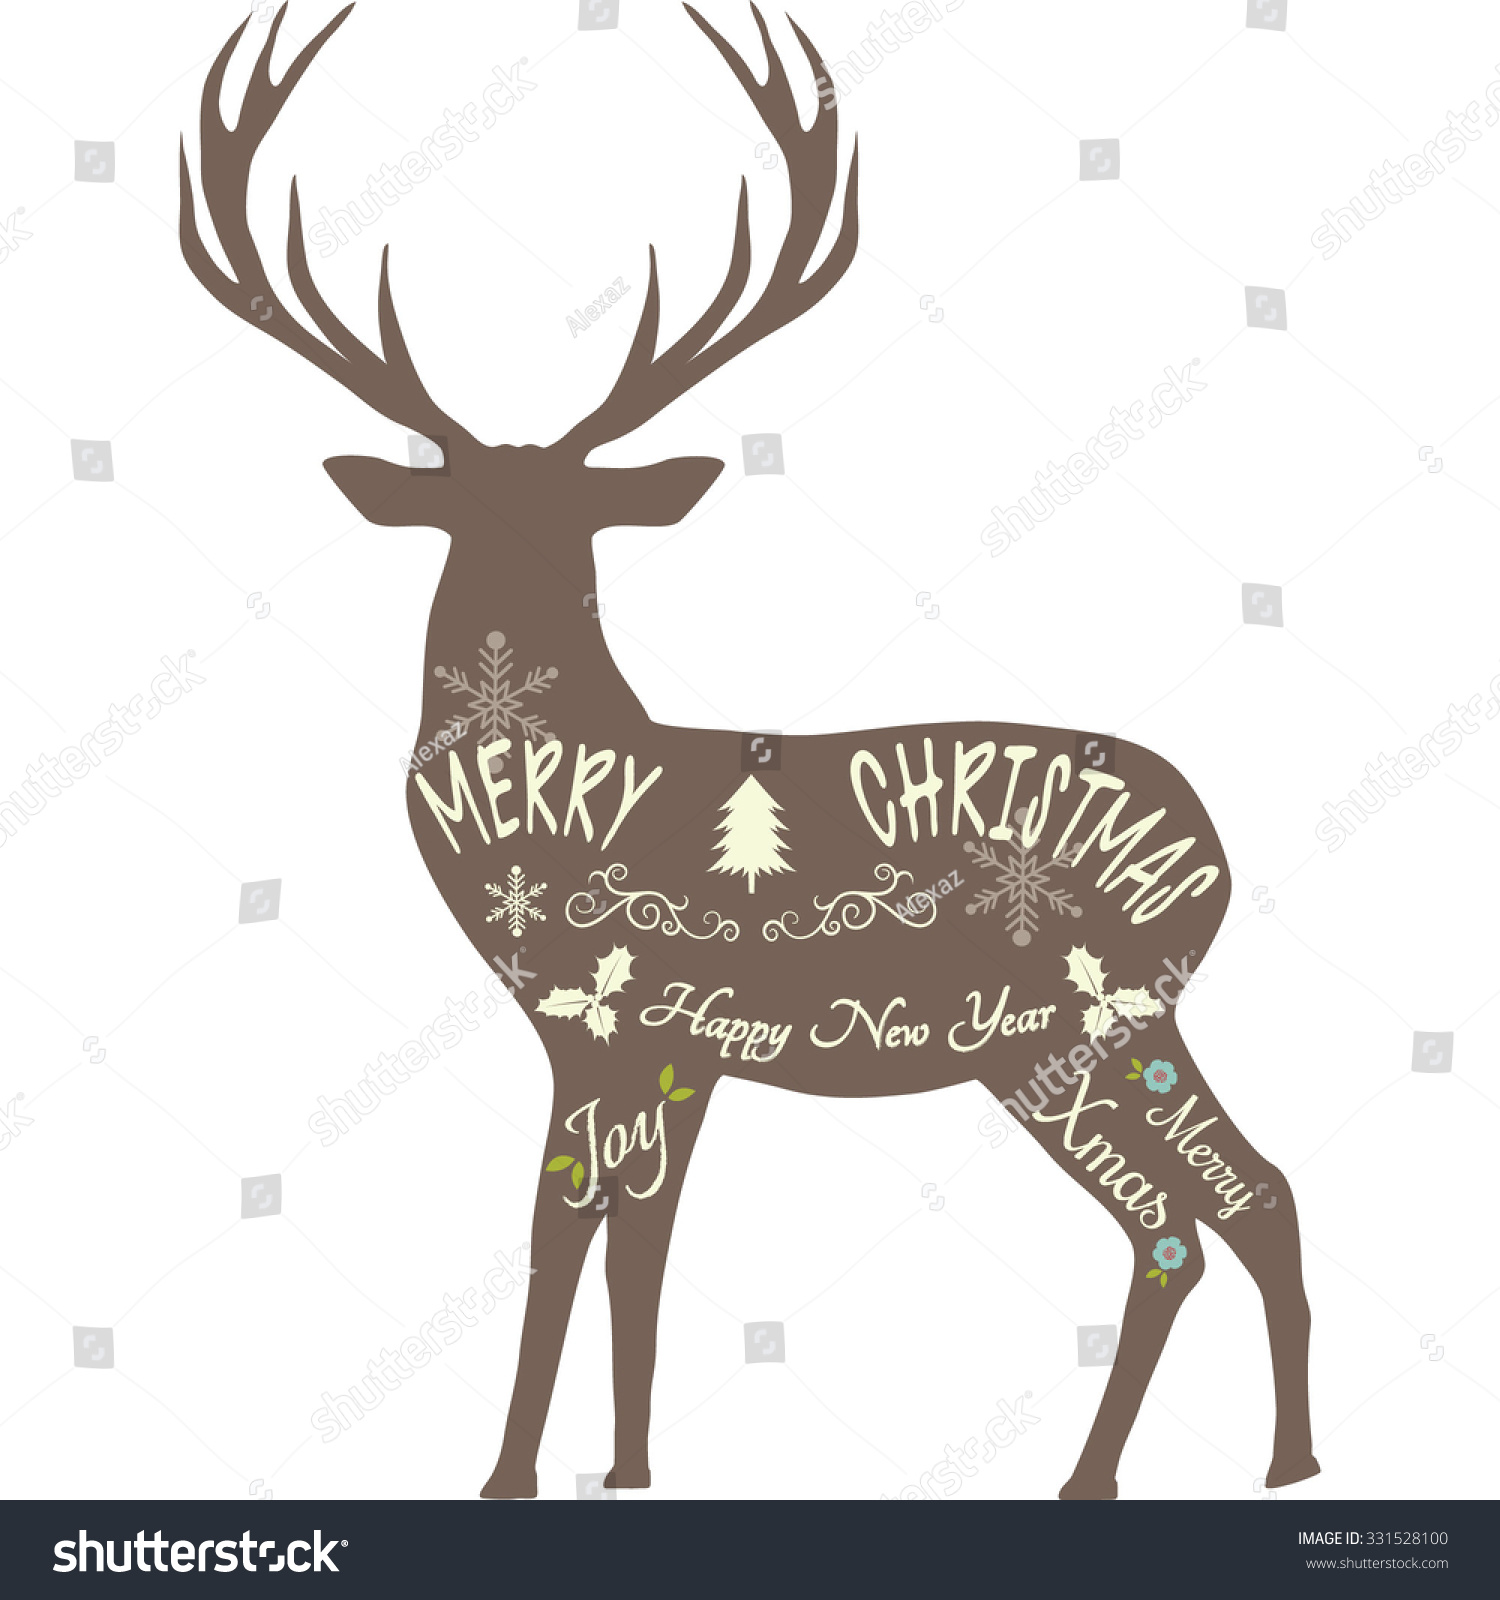 Merry Christmas Reindeer,Reindeer Silhouette,Brown Reindeer Isolated